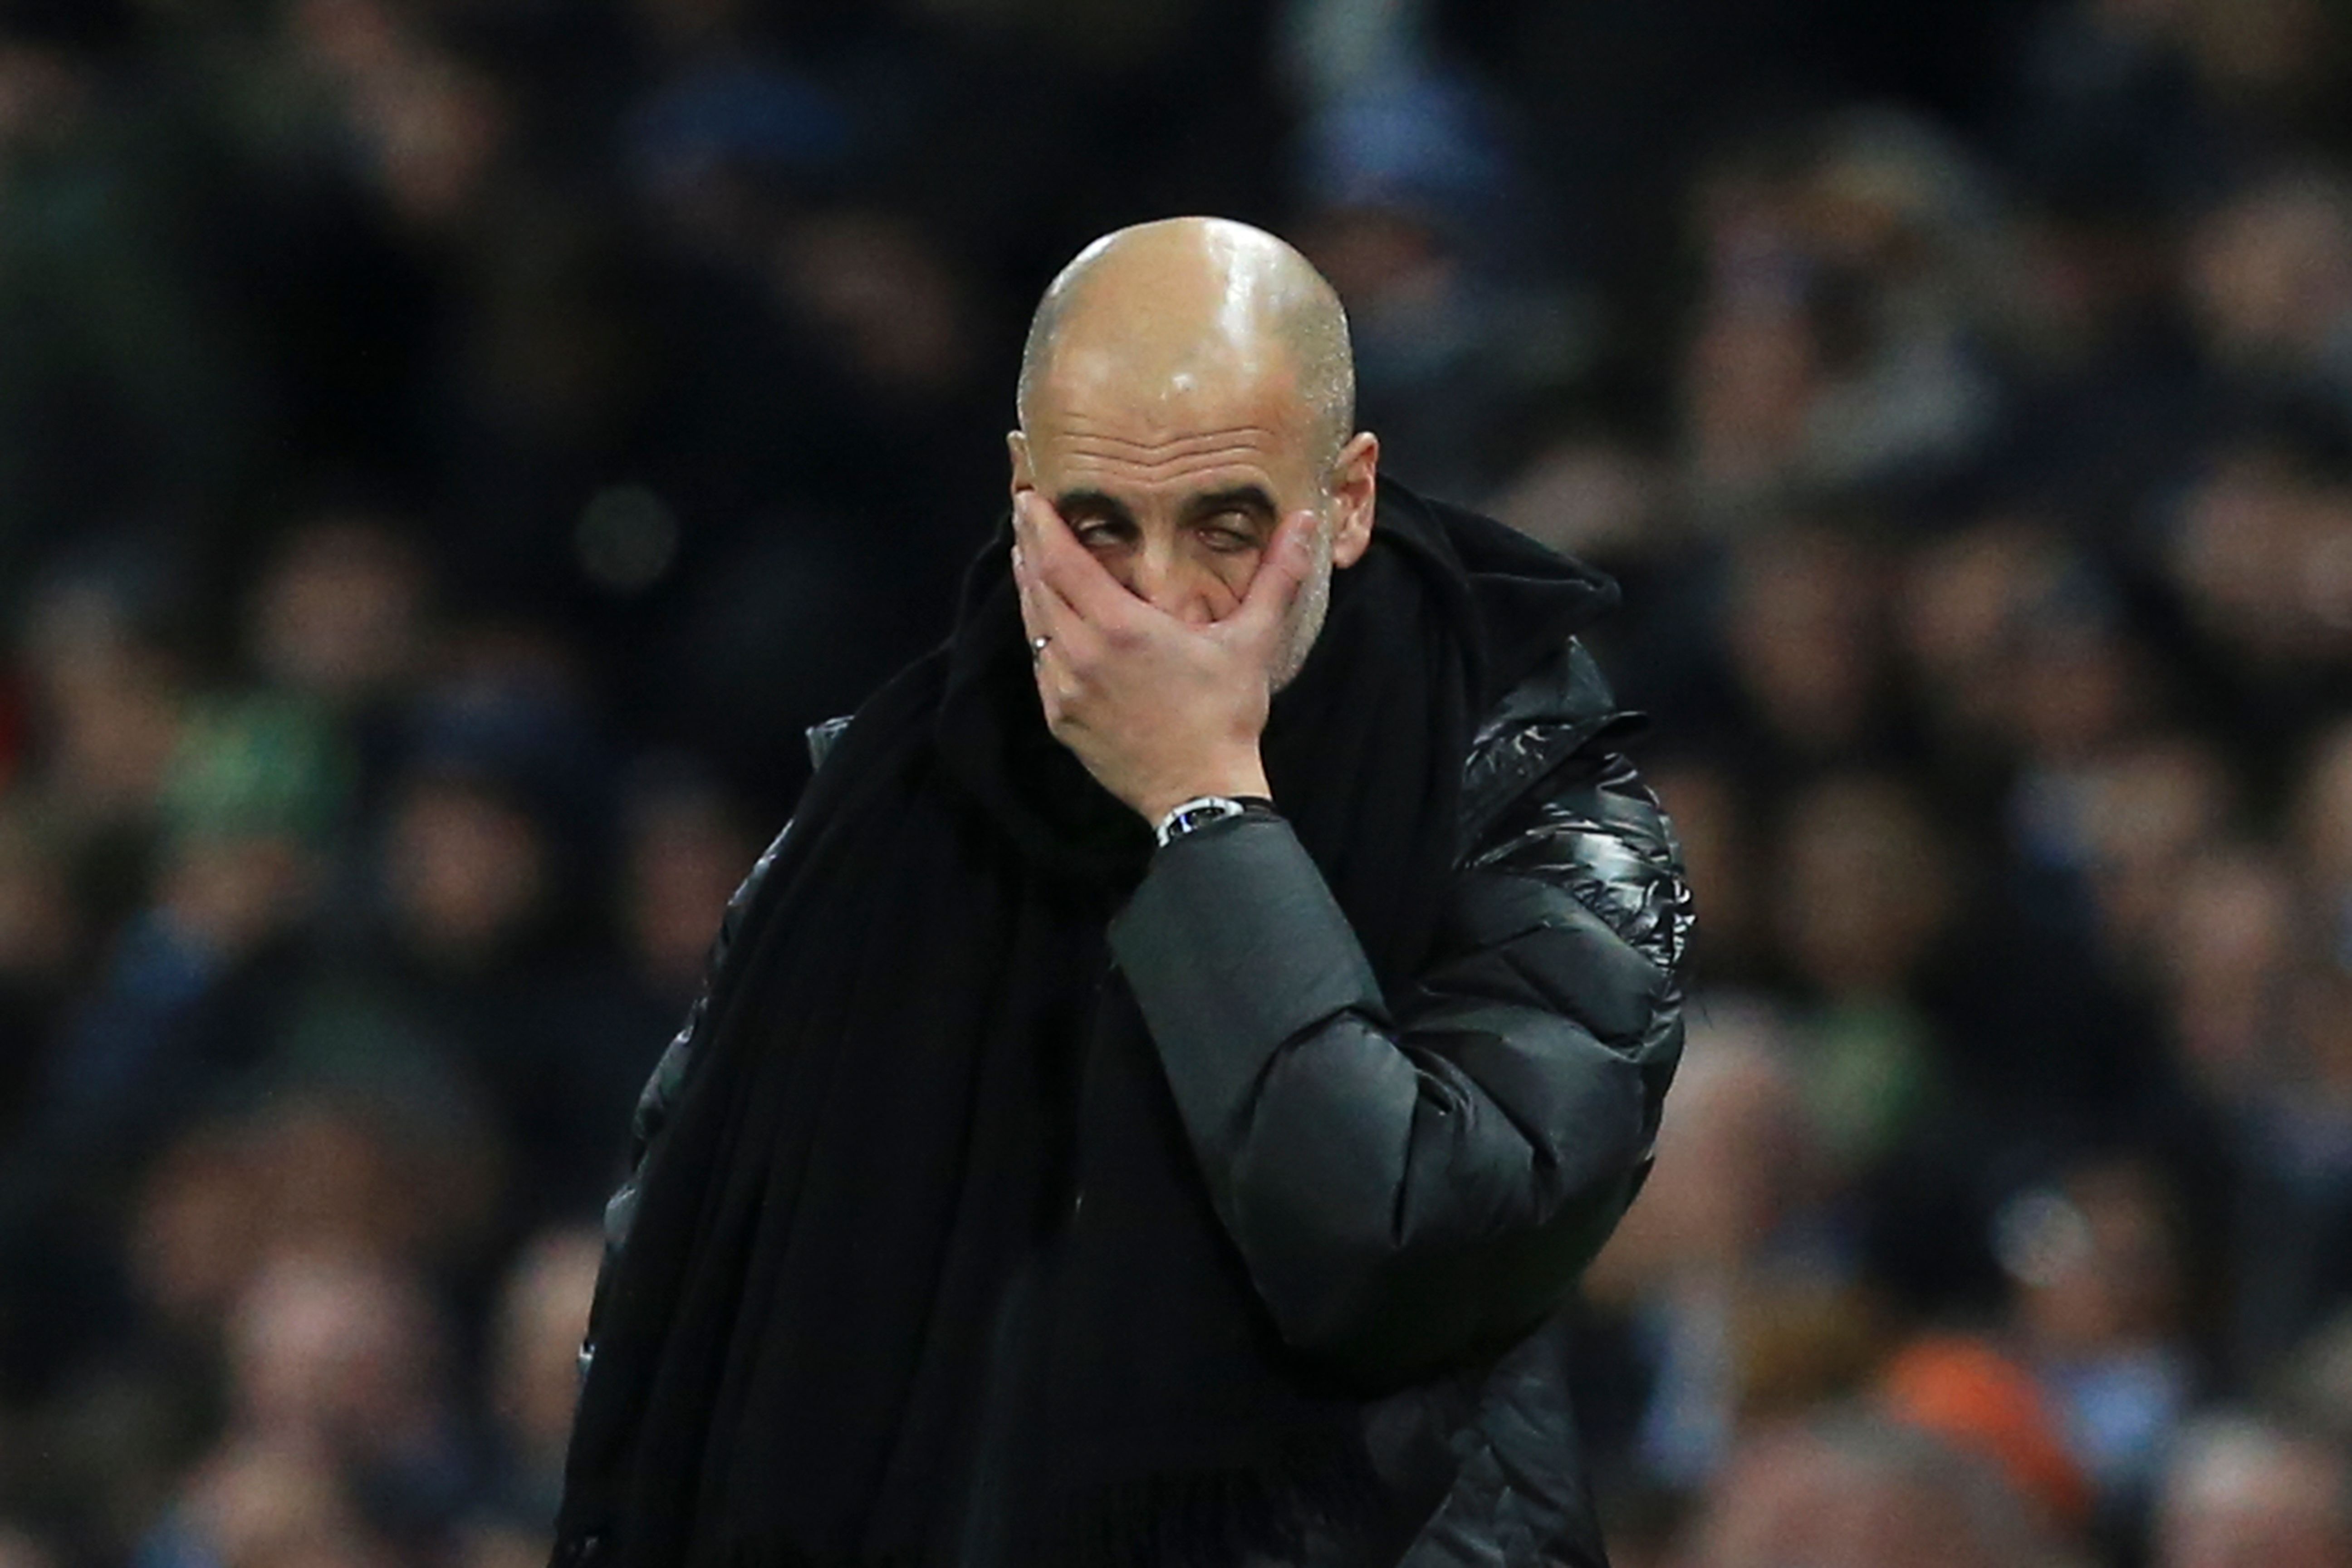 El entrenador Pep Guardiola lamenta la situación del City en la Premier. (Foto Prensa Libre: AFP)